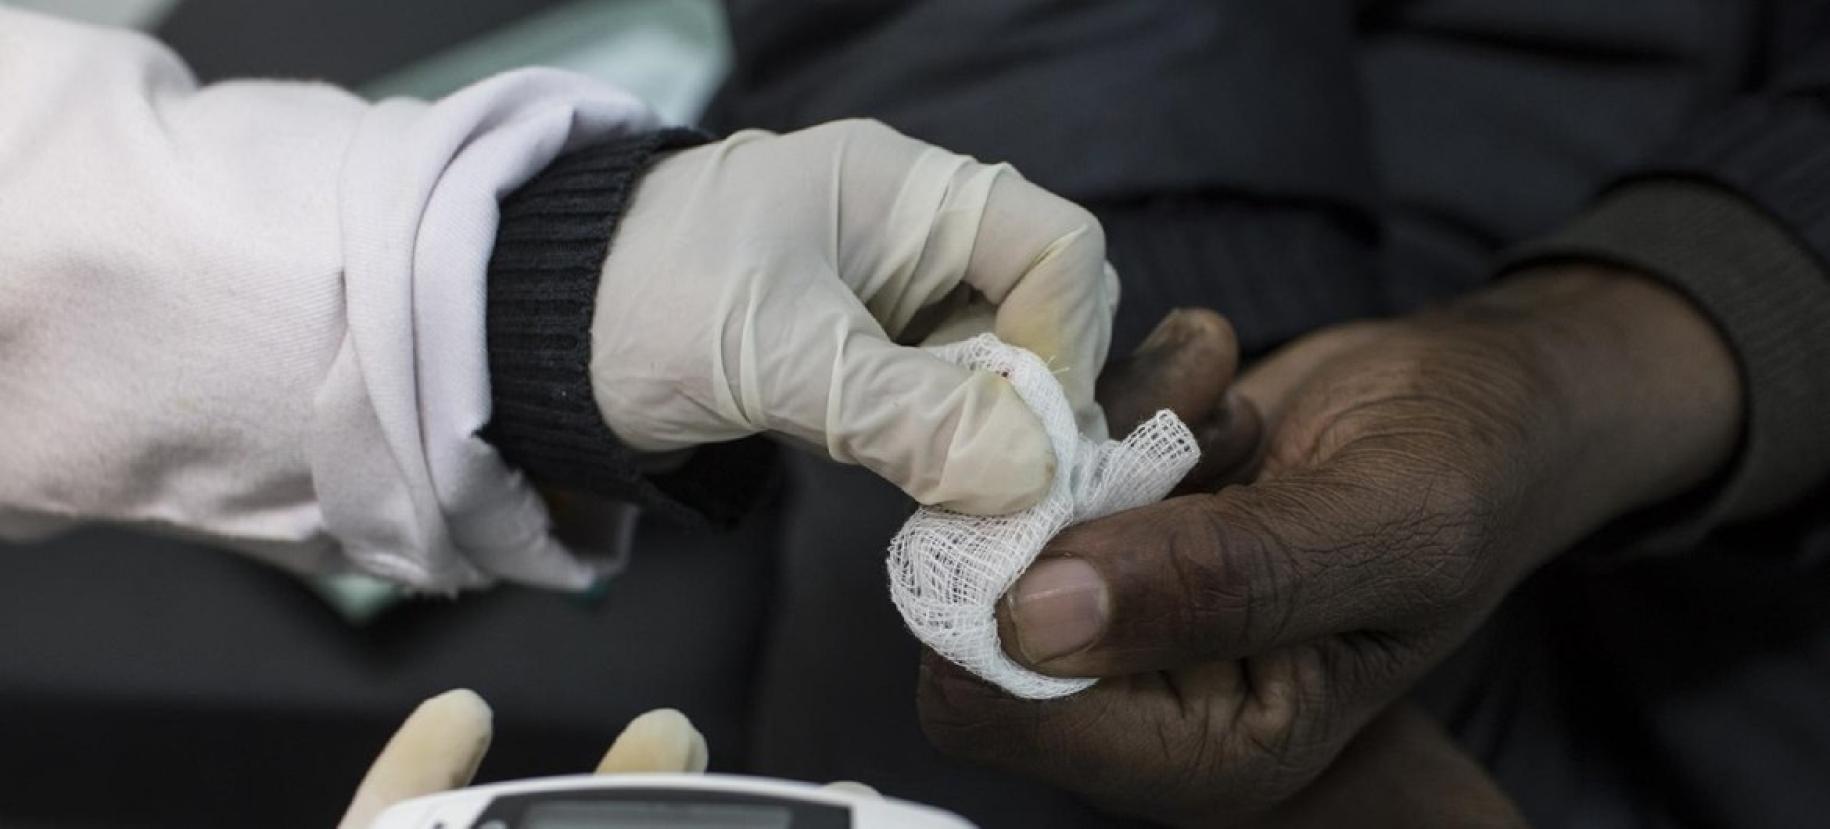 Gros plan sur la main gantée d'un professionnel de santé effectuant un test de dépistage du diabète en Afrique.